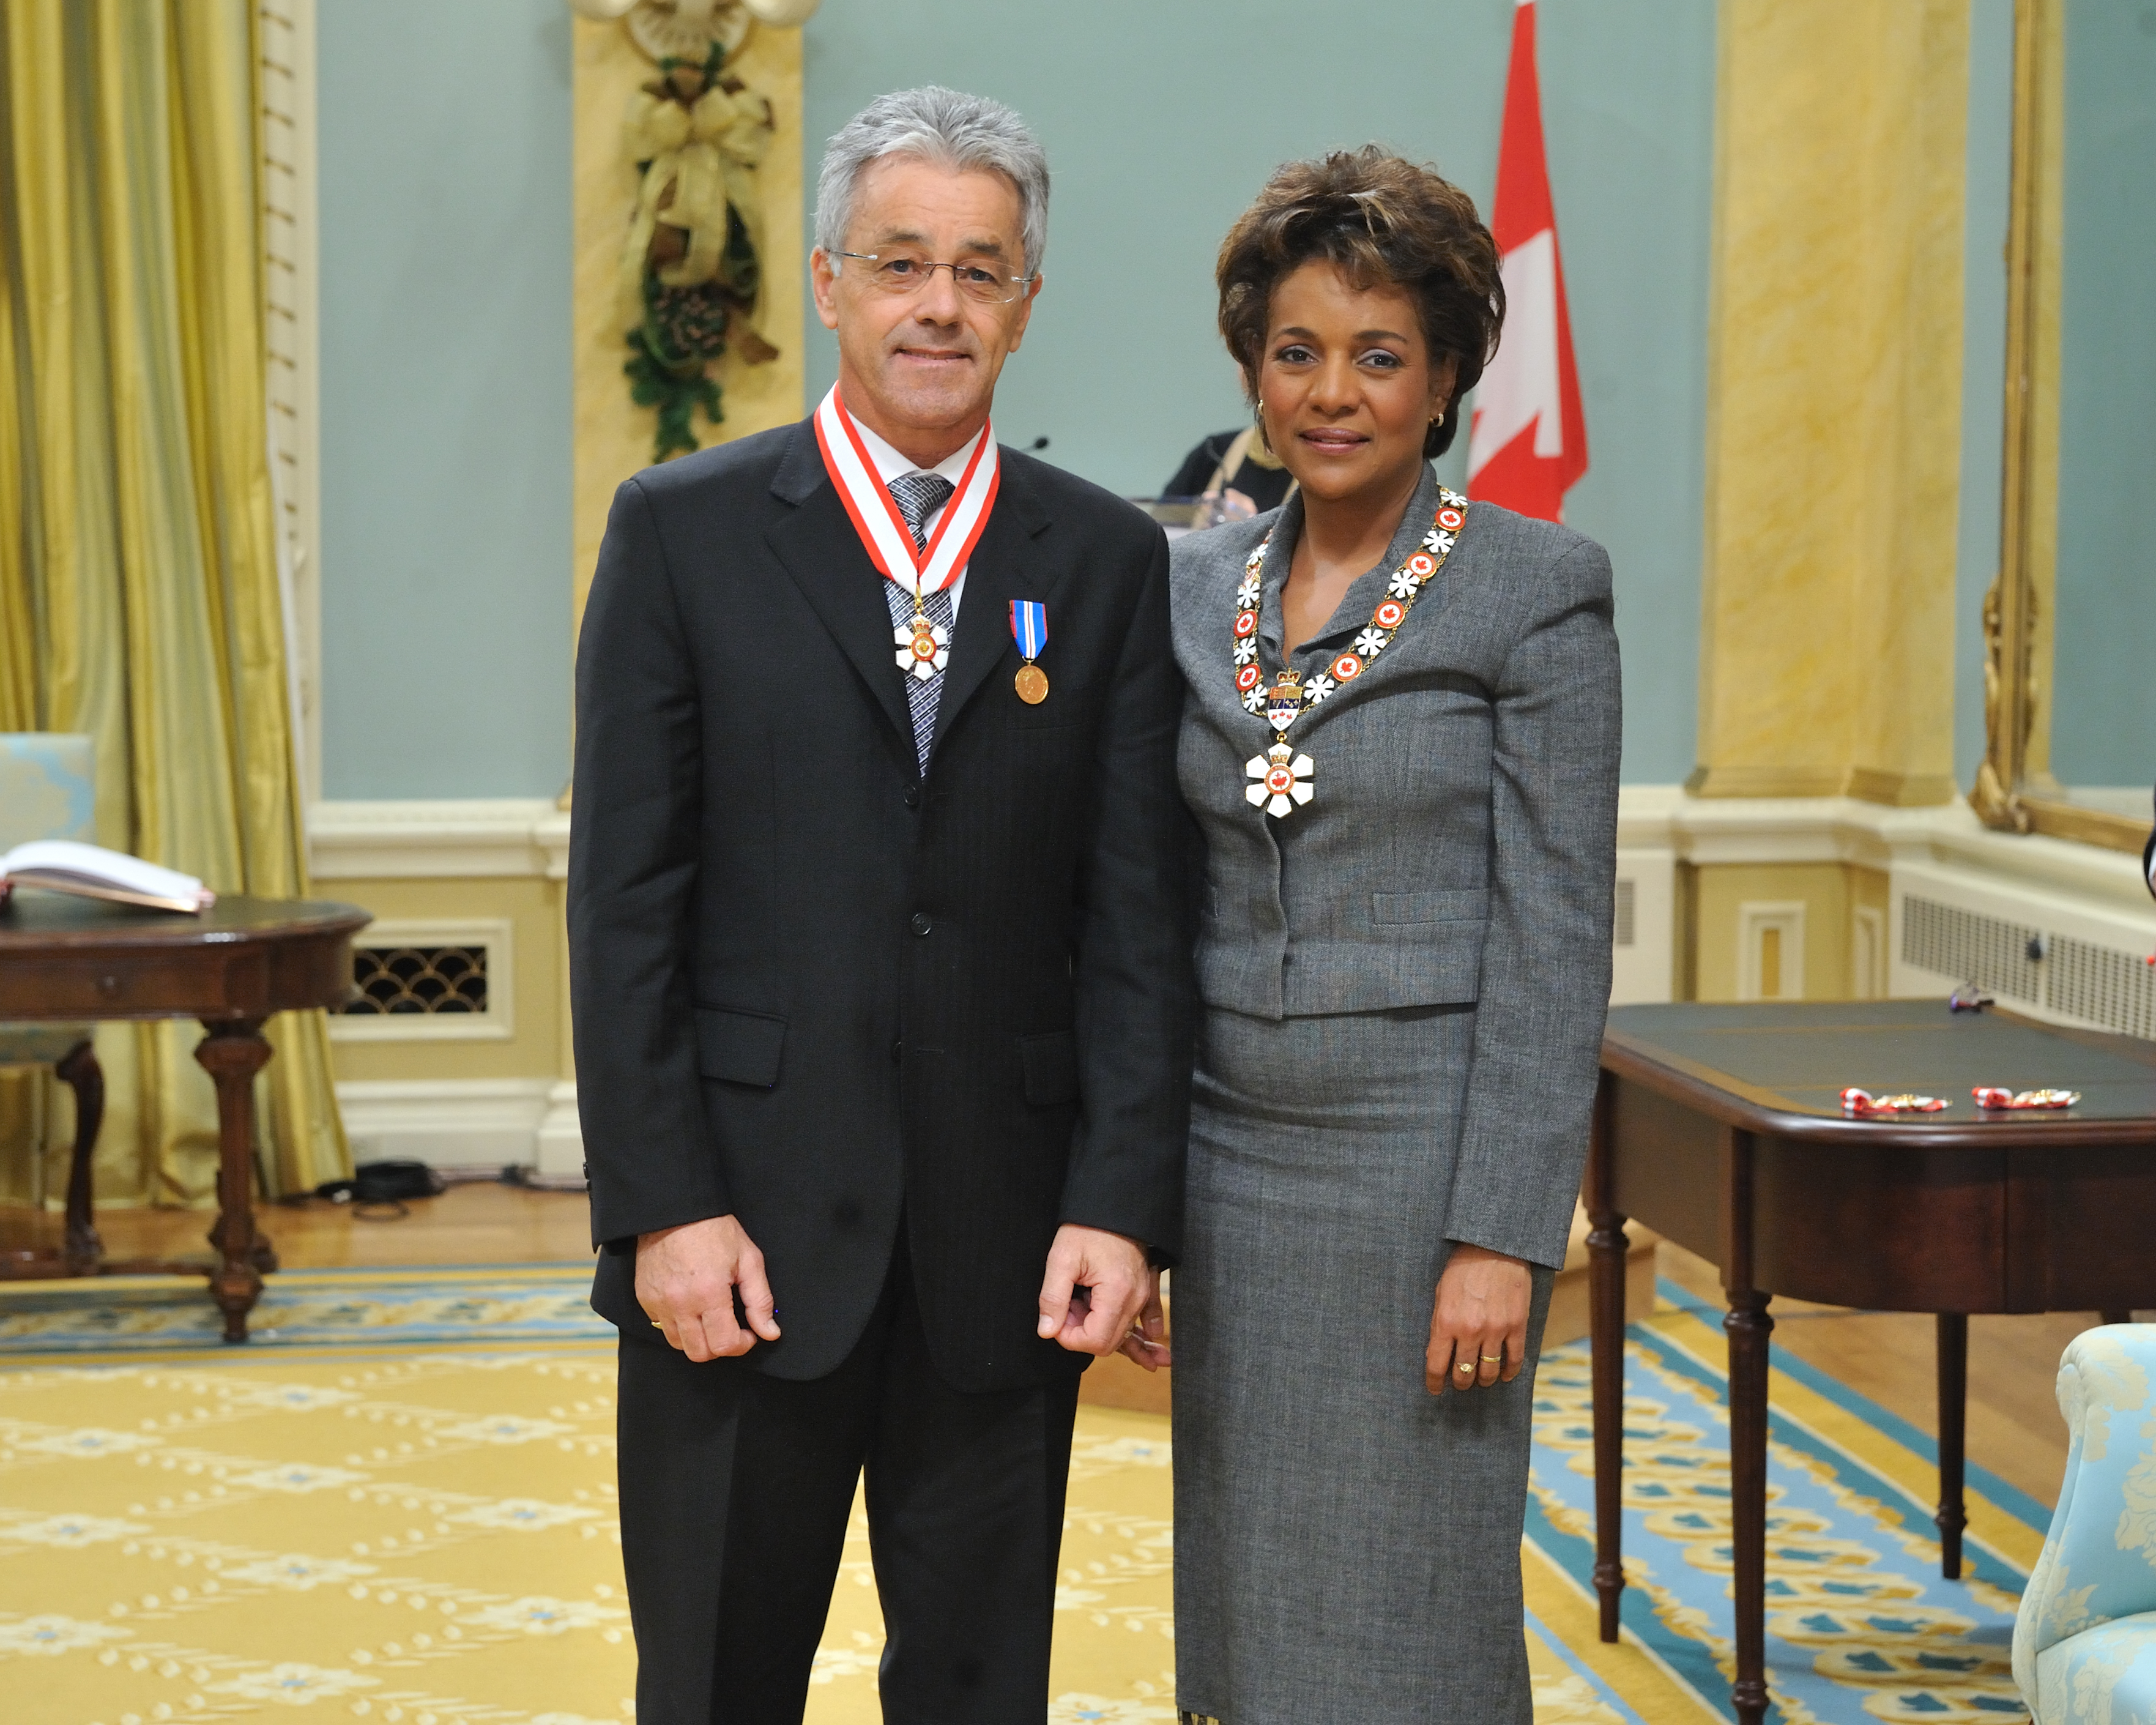 DSweet Her Excellency M Jean Order of Canada 2008.jpg